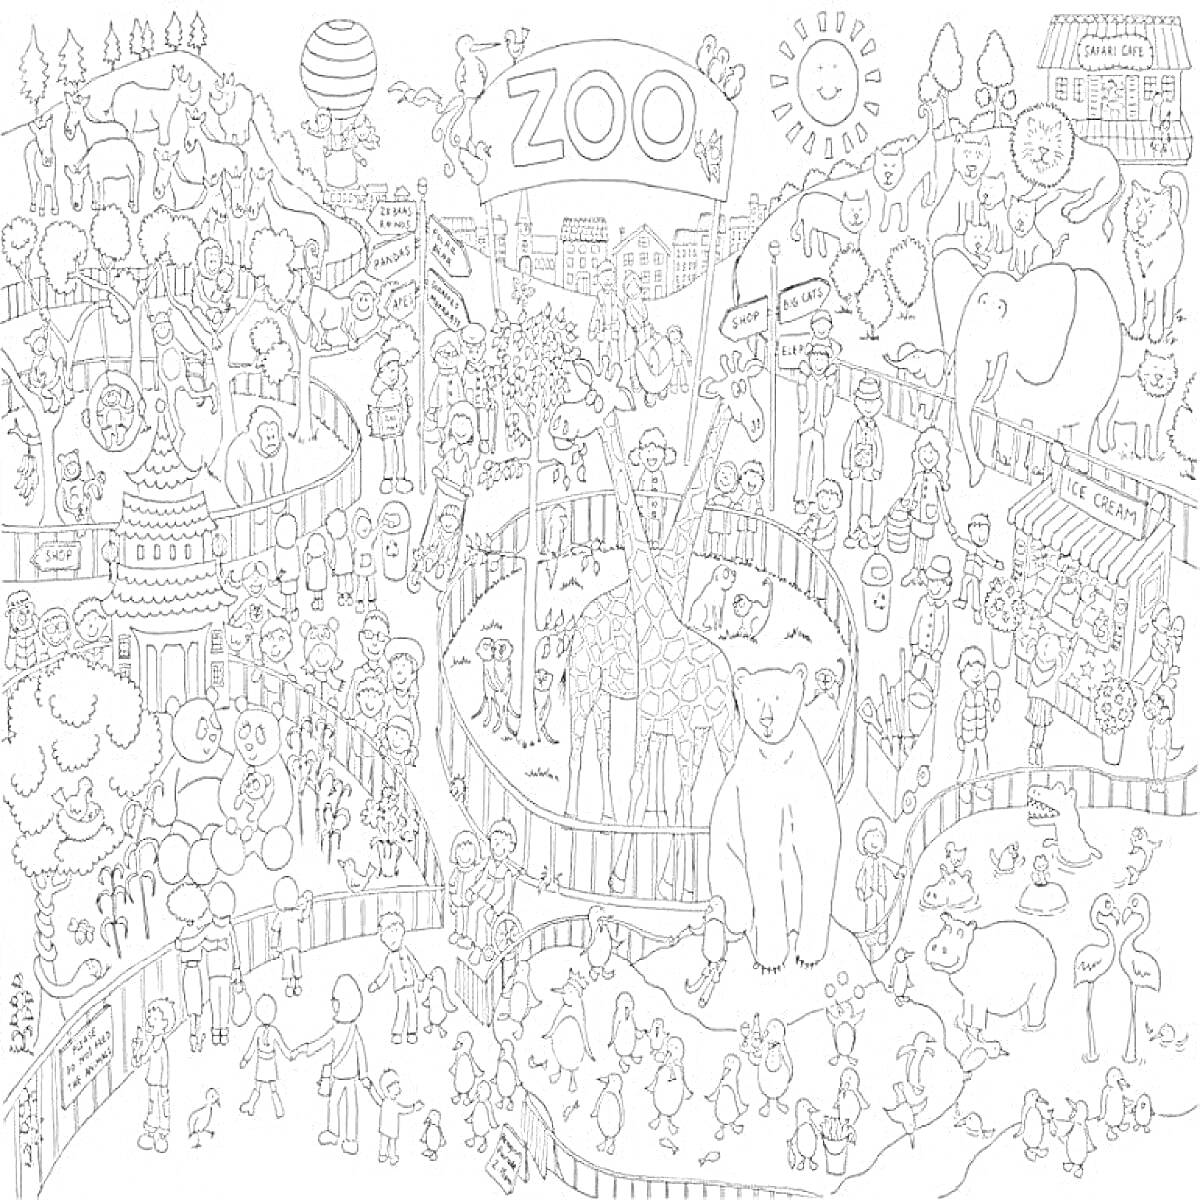 Раскраска Зоопарк со жирафом, слоном, обезьянами, детьми и взрослыми, животными, деревьями, домиками, воздушным шаром и разными аттракционами